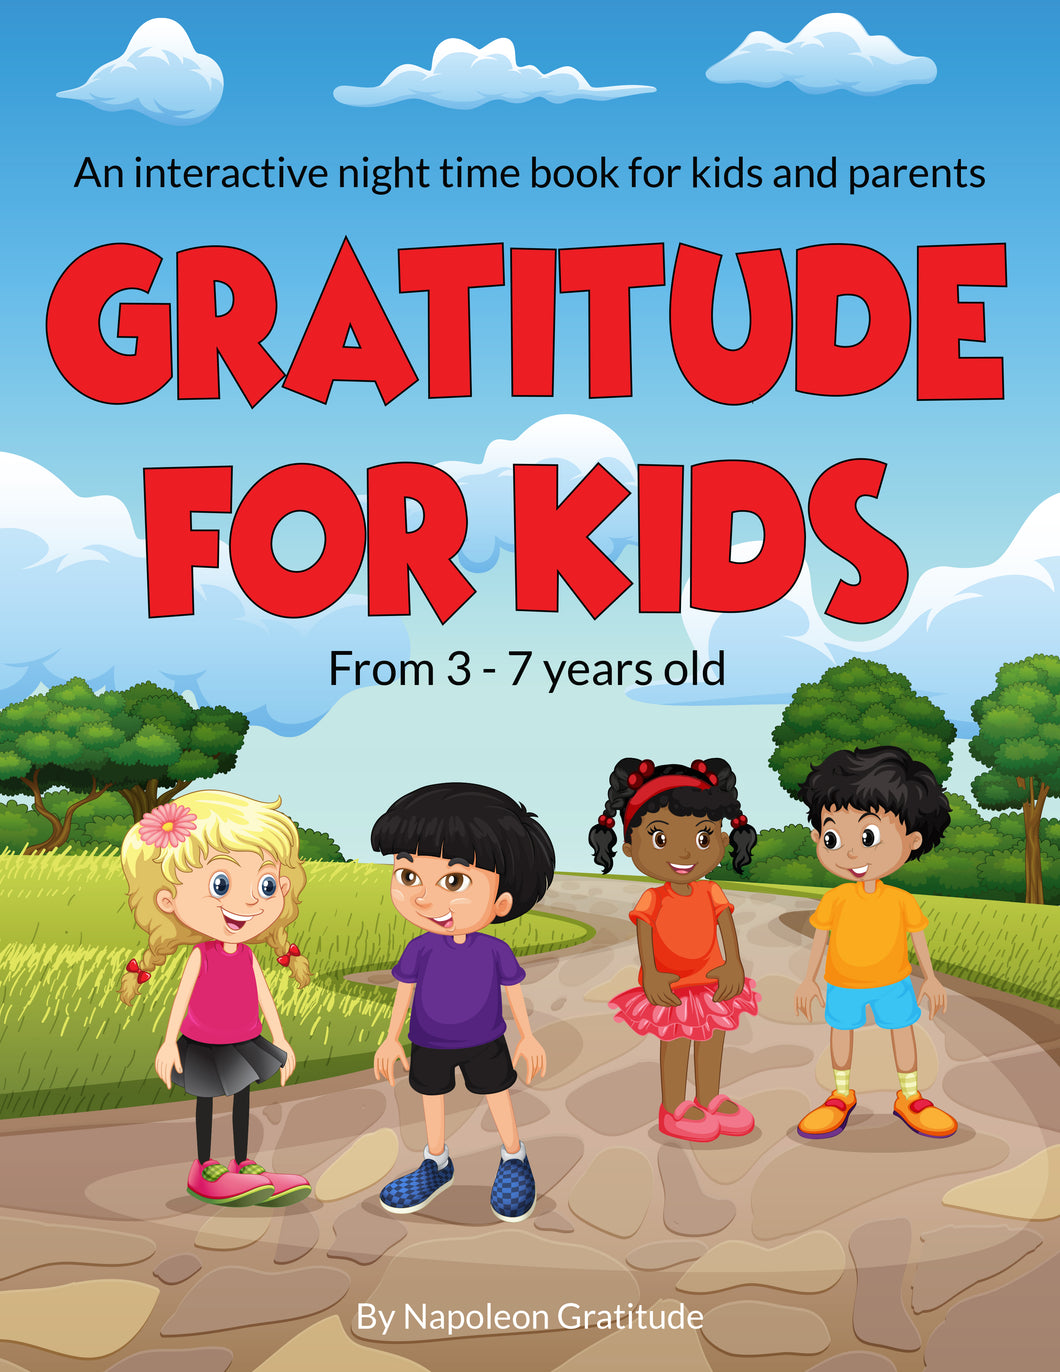 Pre-Order the 28-day interactive gratitude children's book